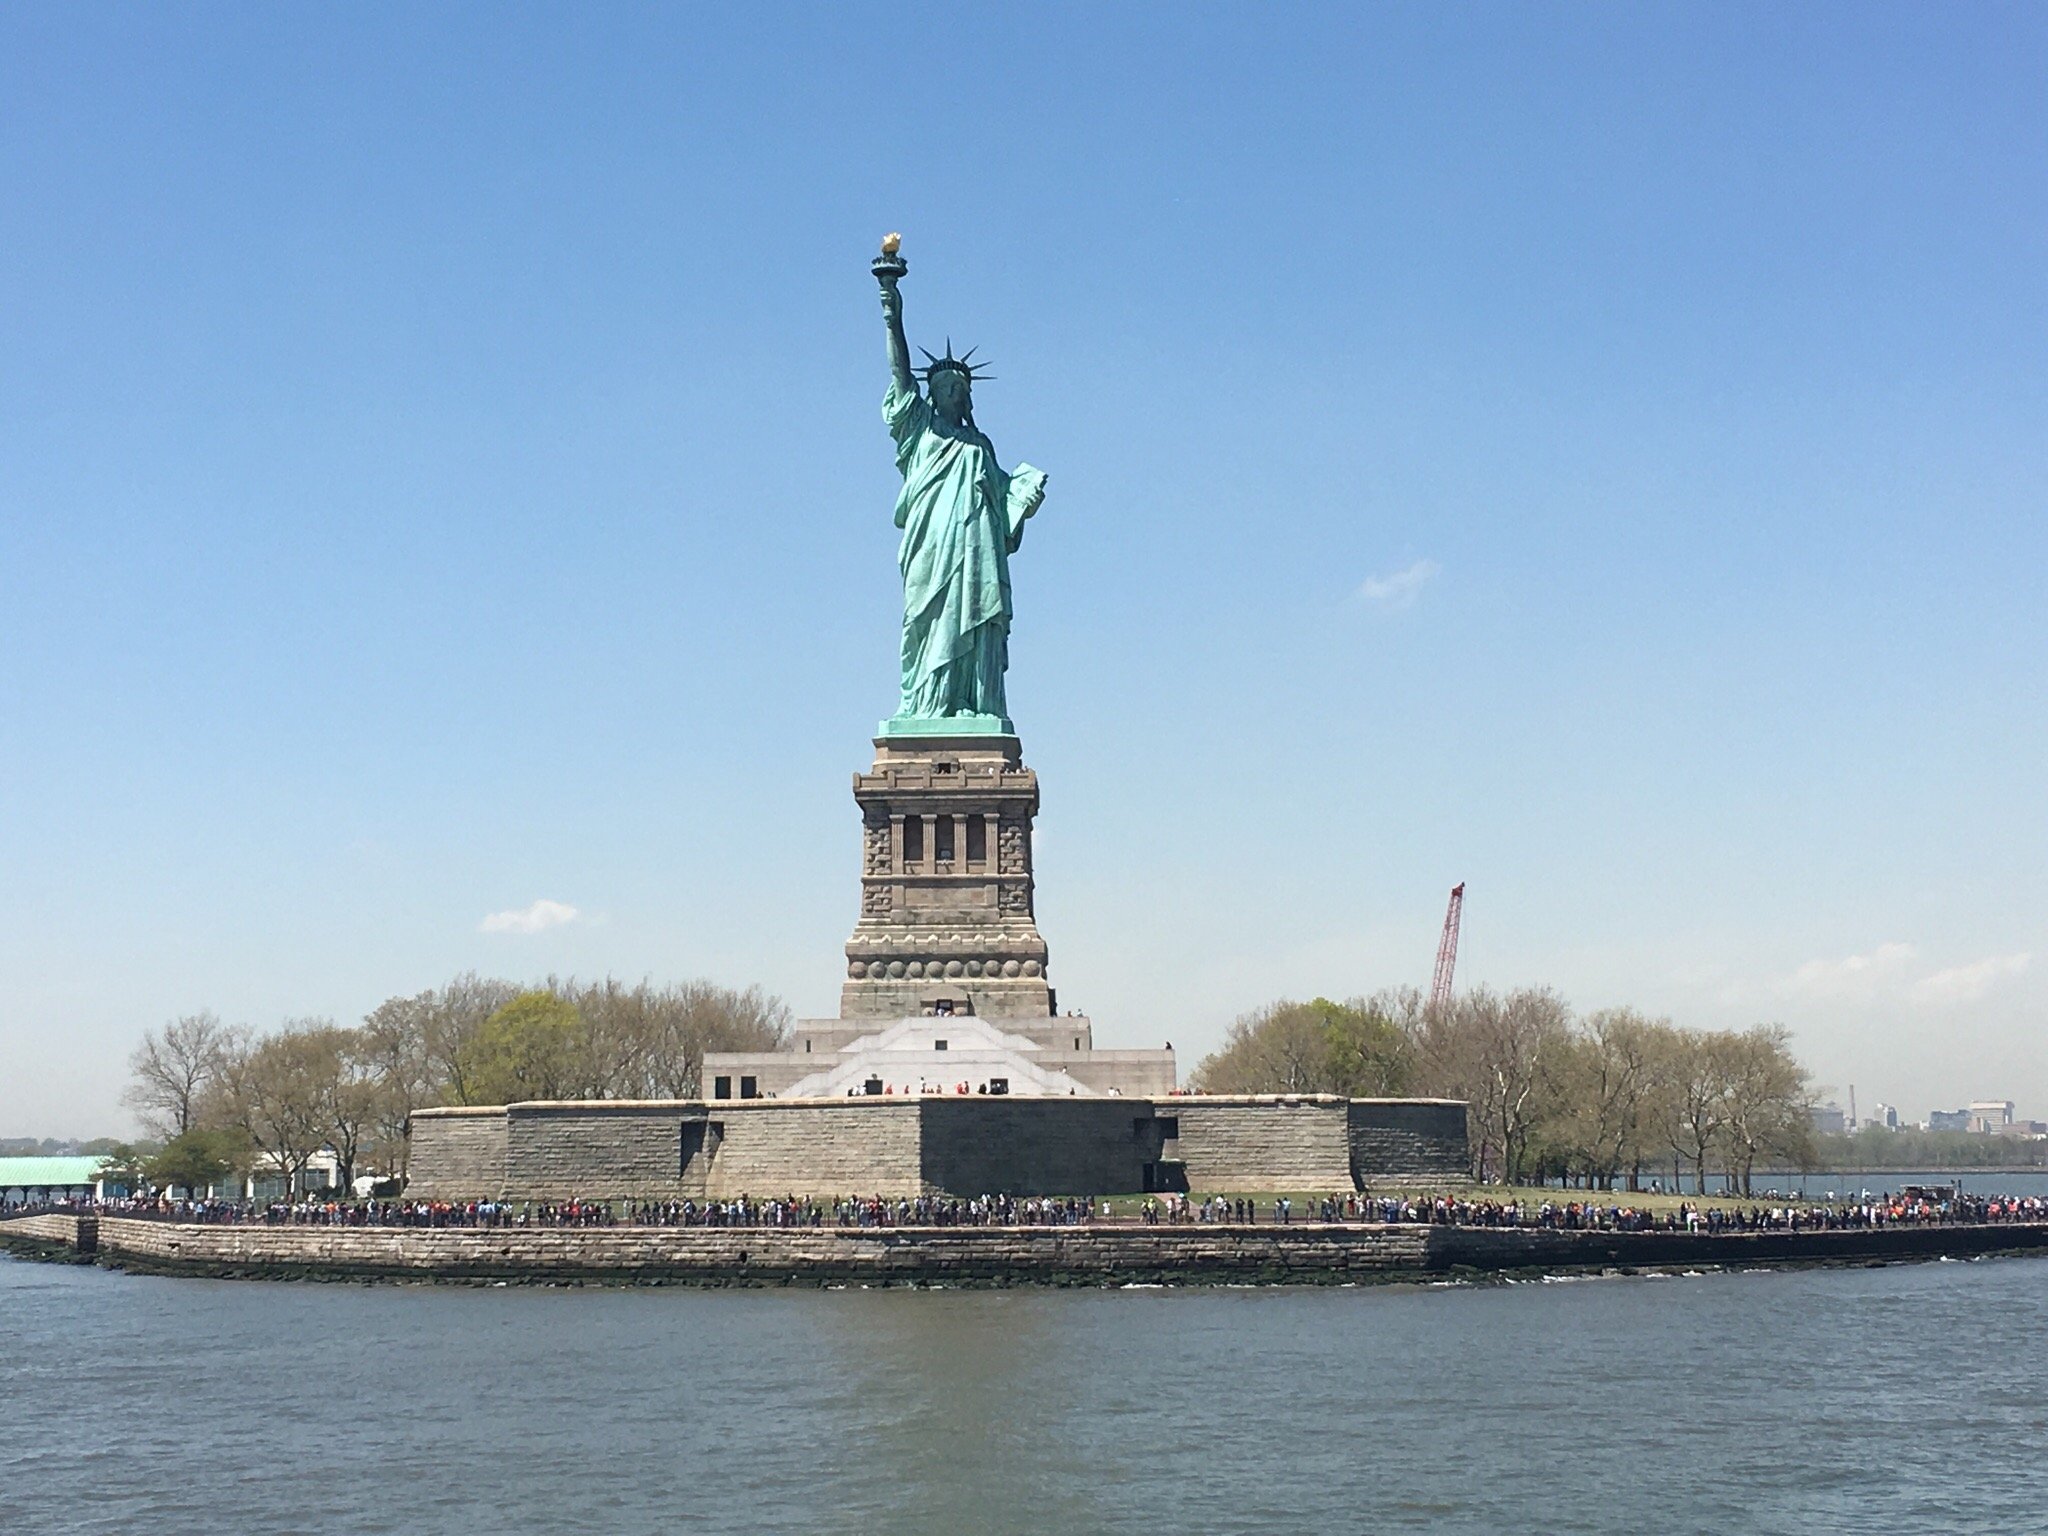 Beautiful Statue of Liberty